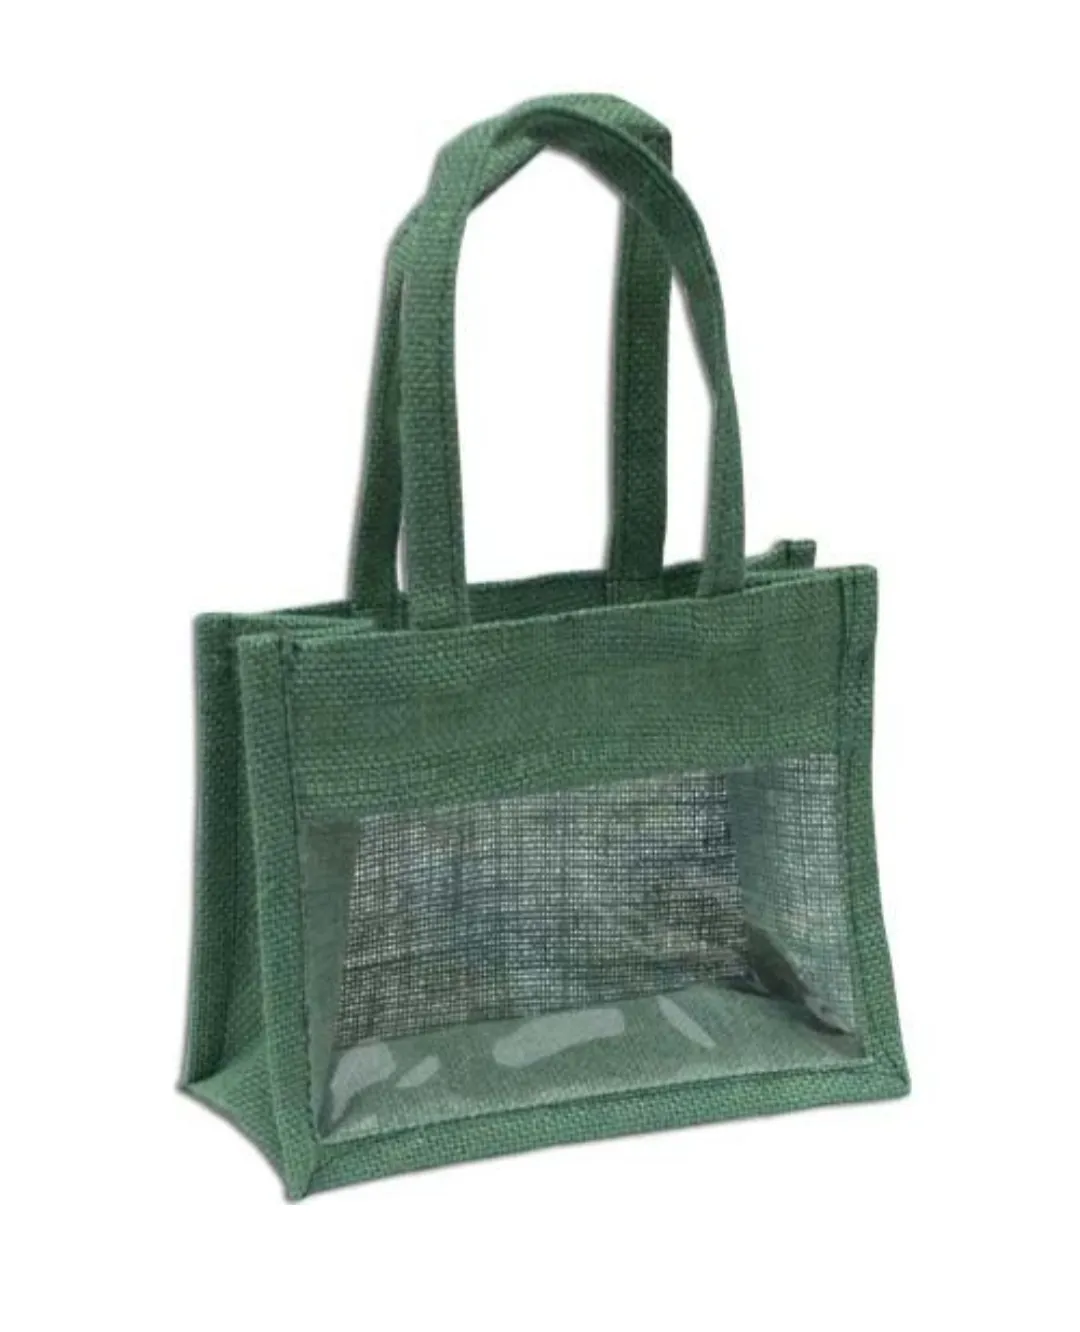 Şeffaf pvc jüt şarap çantası/şişe hediye çantası promosyon jüt çanta/pamuk kordon kolu PVC pencere ile küçük jüt çanta